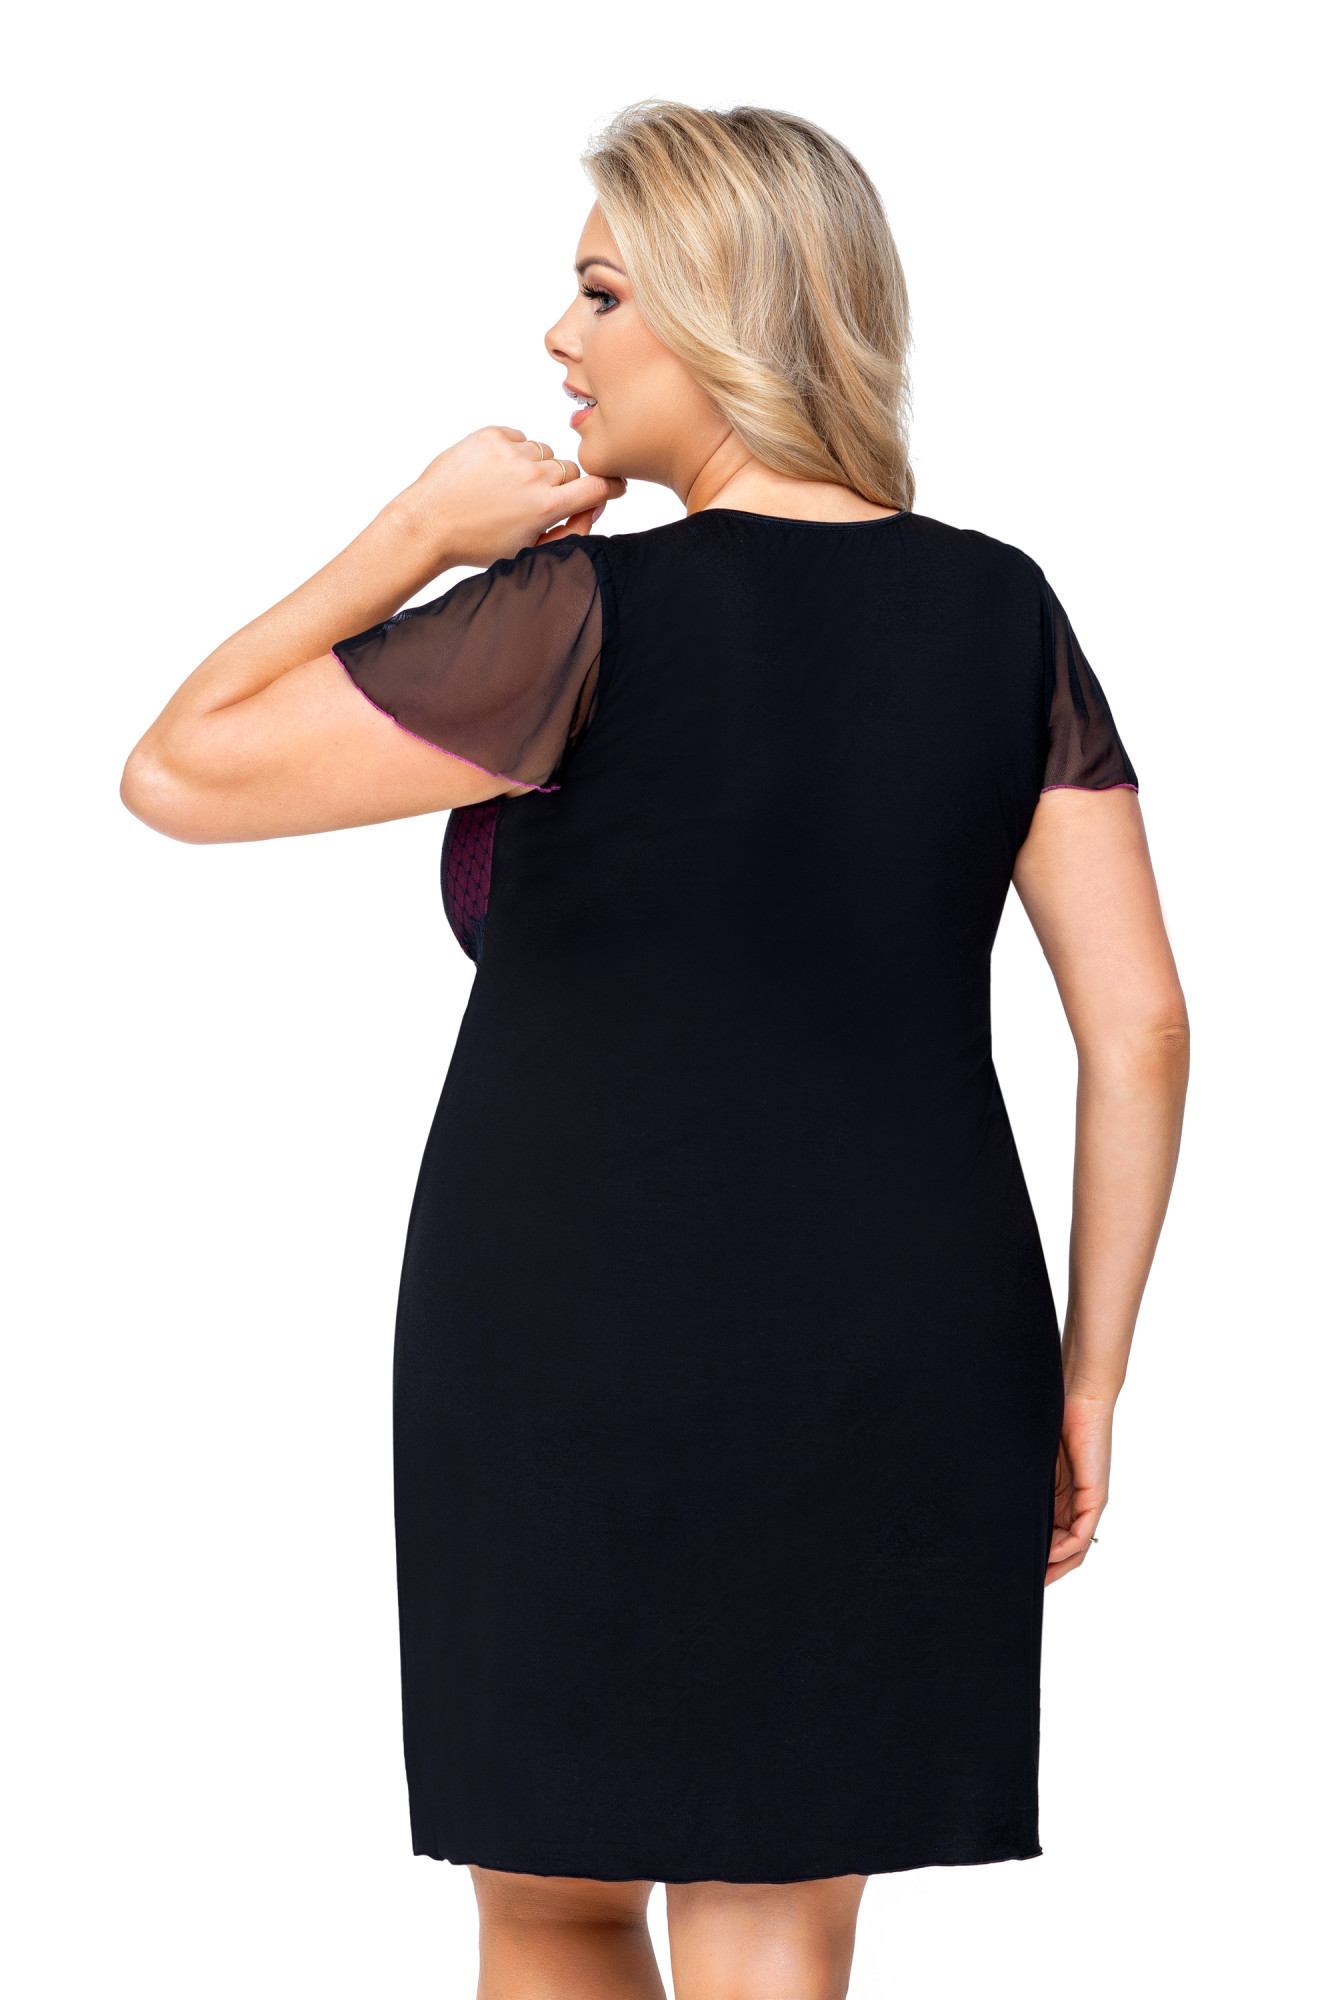 Tričko Zoya Size Plus Black - Donna 48